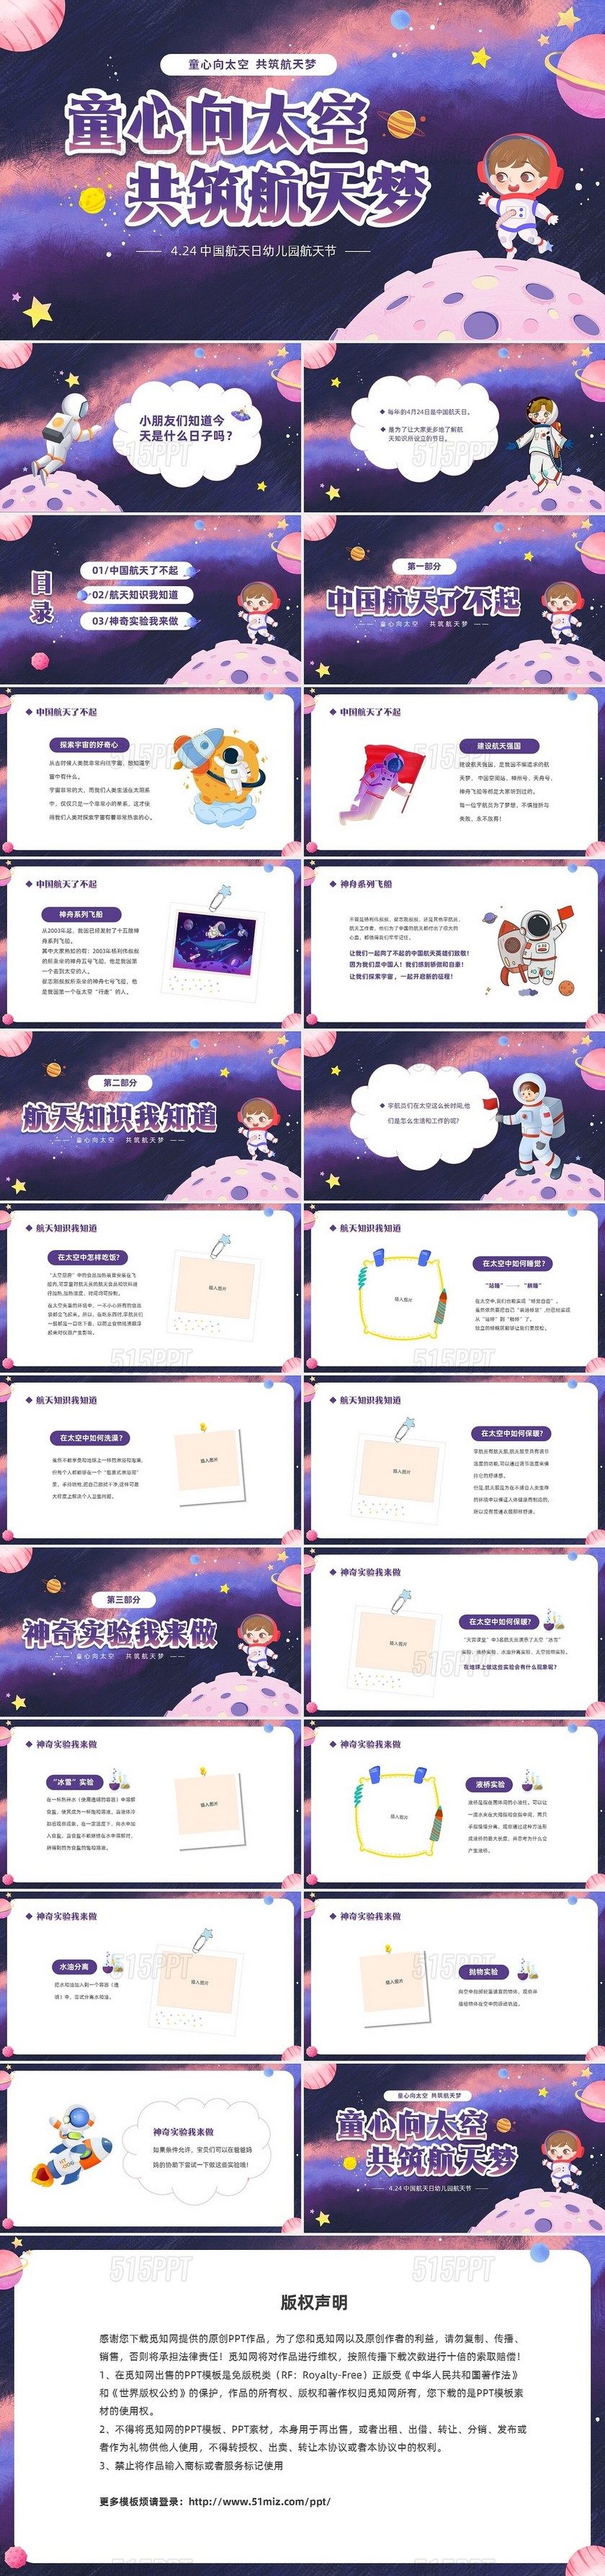 彩色卡通儿童童心向太空共筑航天梦424中国航天日